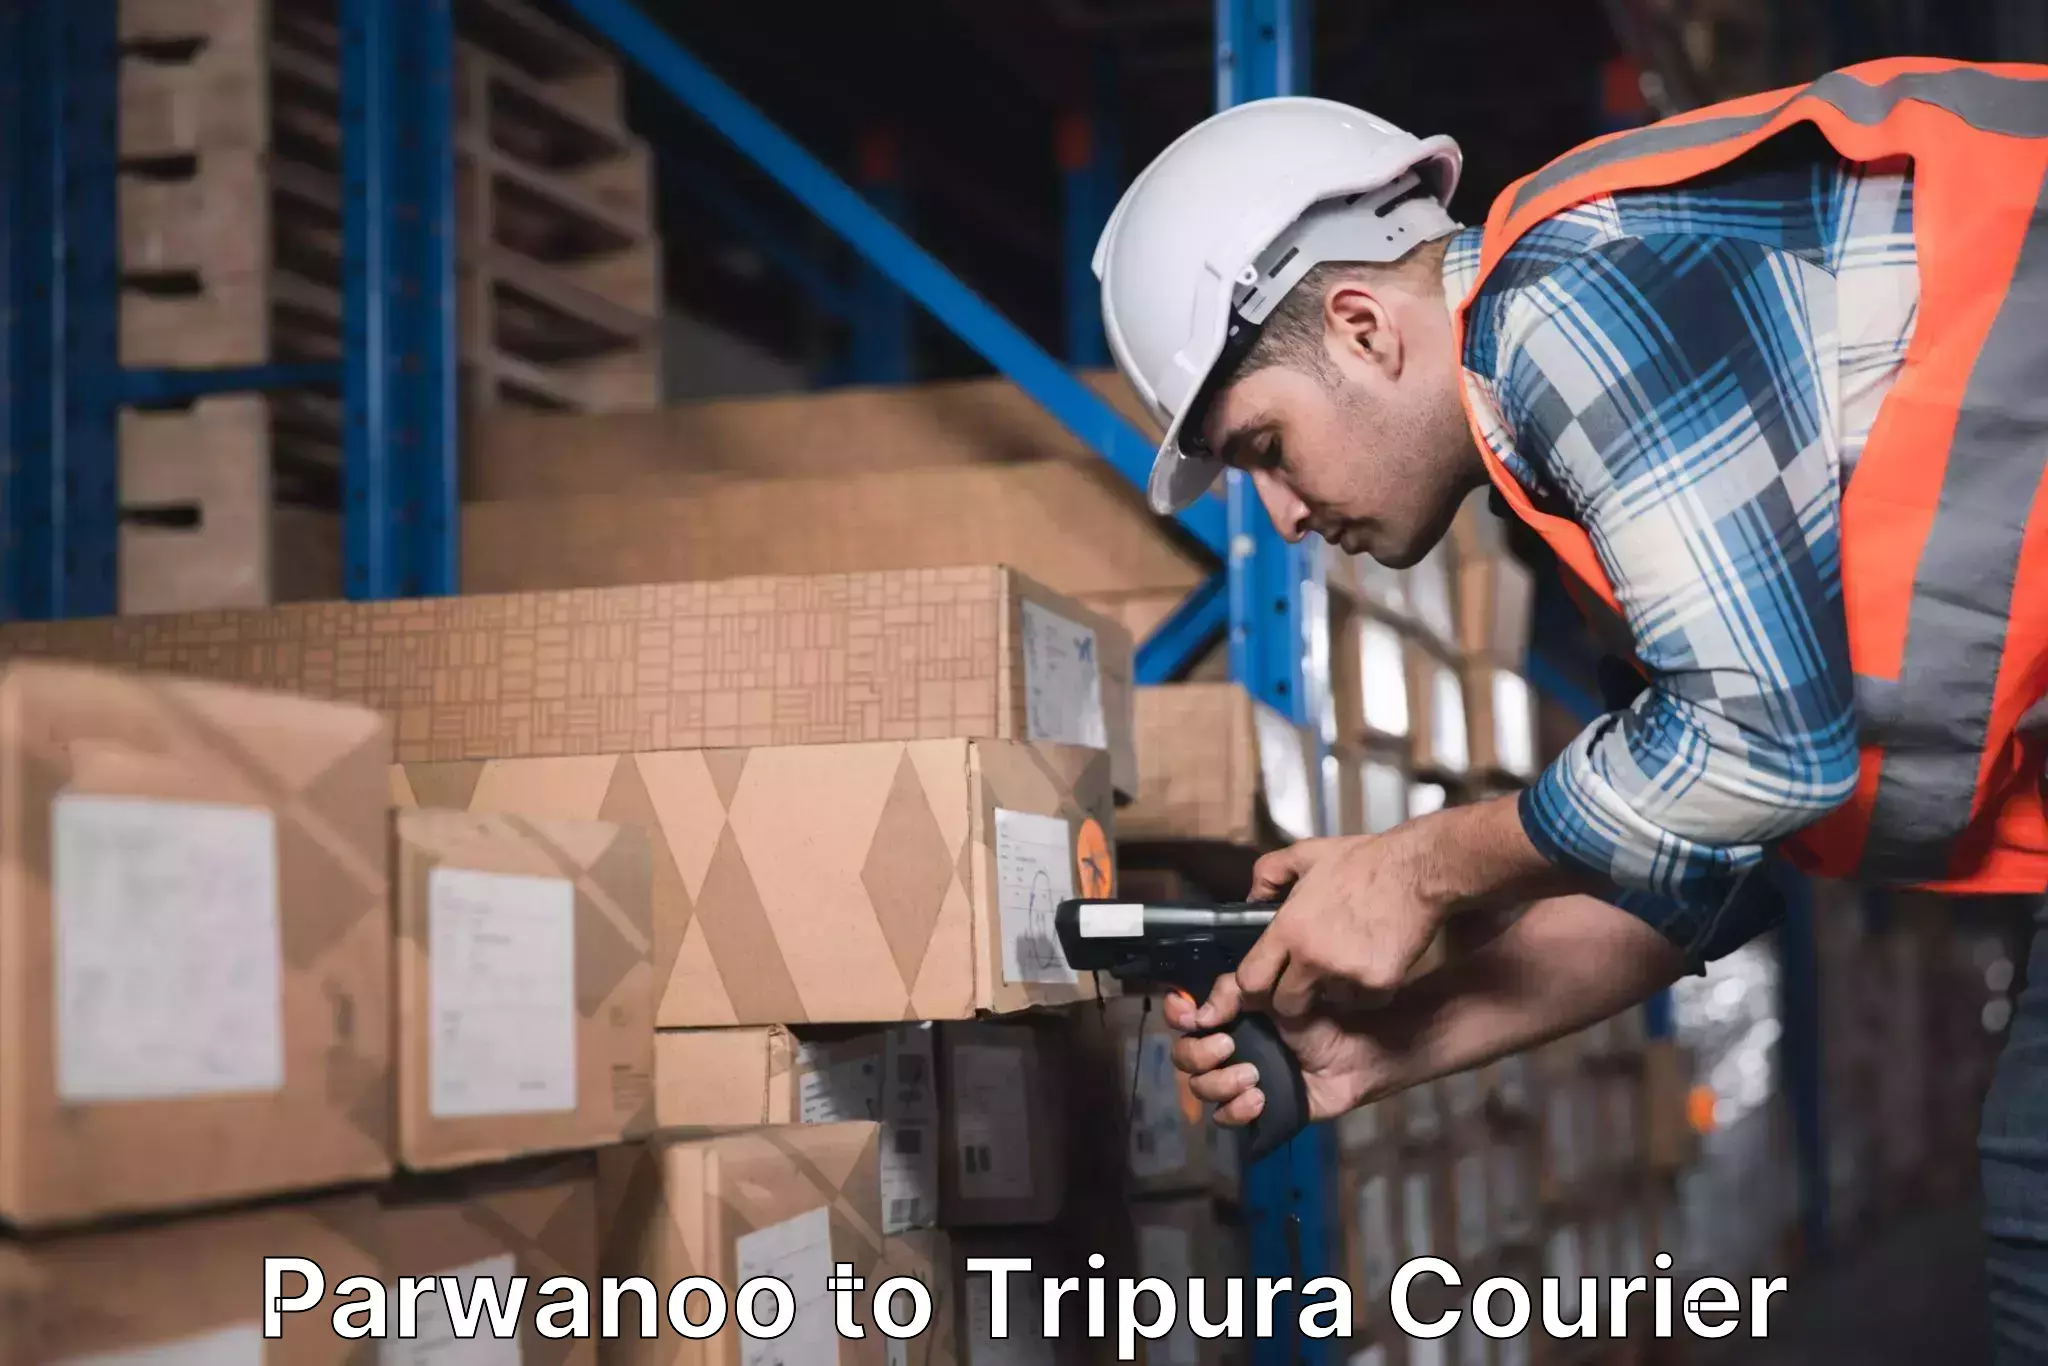 Budget-friendly shipping Parwanoo to IIIT Agartala